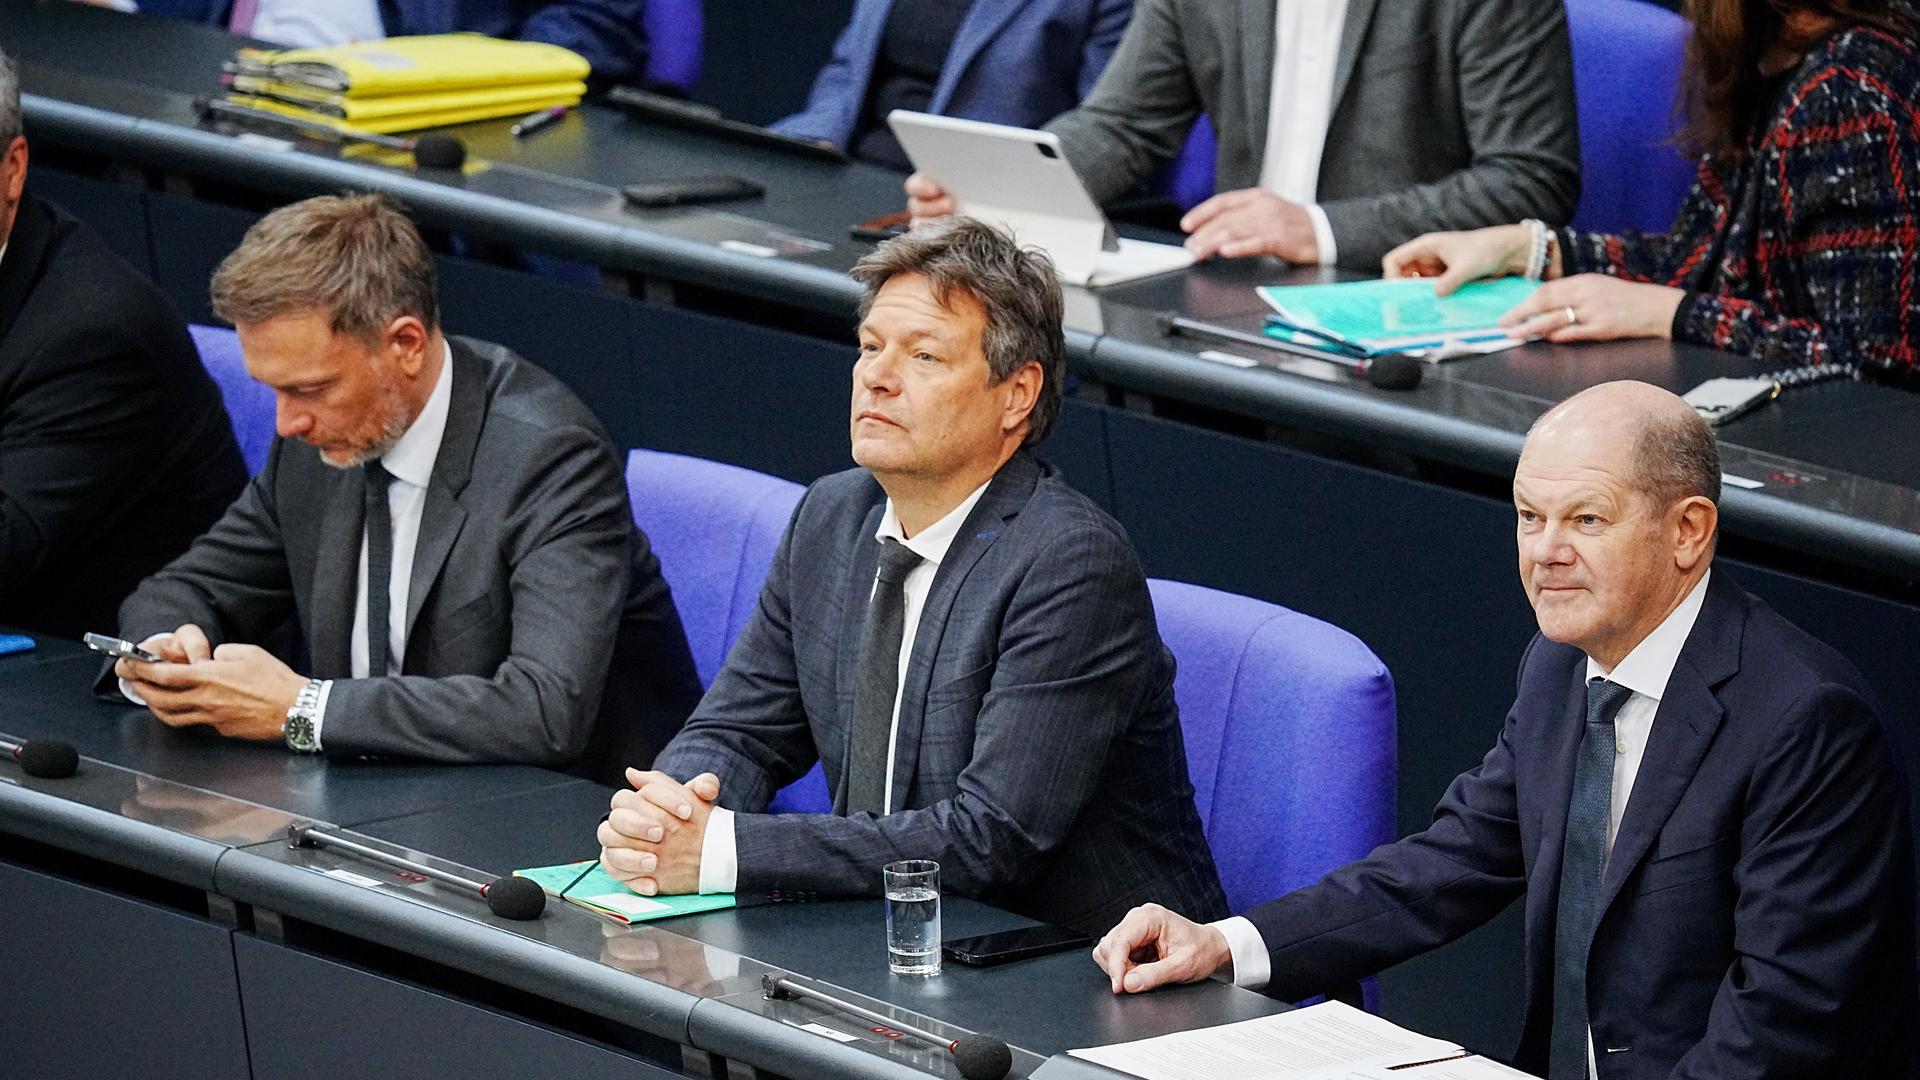 Bundeskanzler Olaf Scholz (SPD, r) sitzt im Bundestag neben Christian Lindner (FDP, l), Bundesminister der Finanzen, und Robert Habeck (Bündnis 90/Die Grünen, M), Bundesminister für Wirtschaft und Klimaschutz